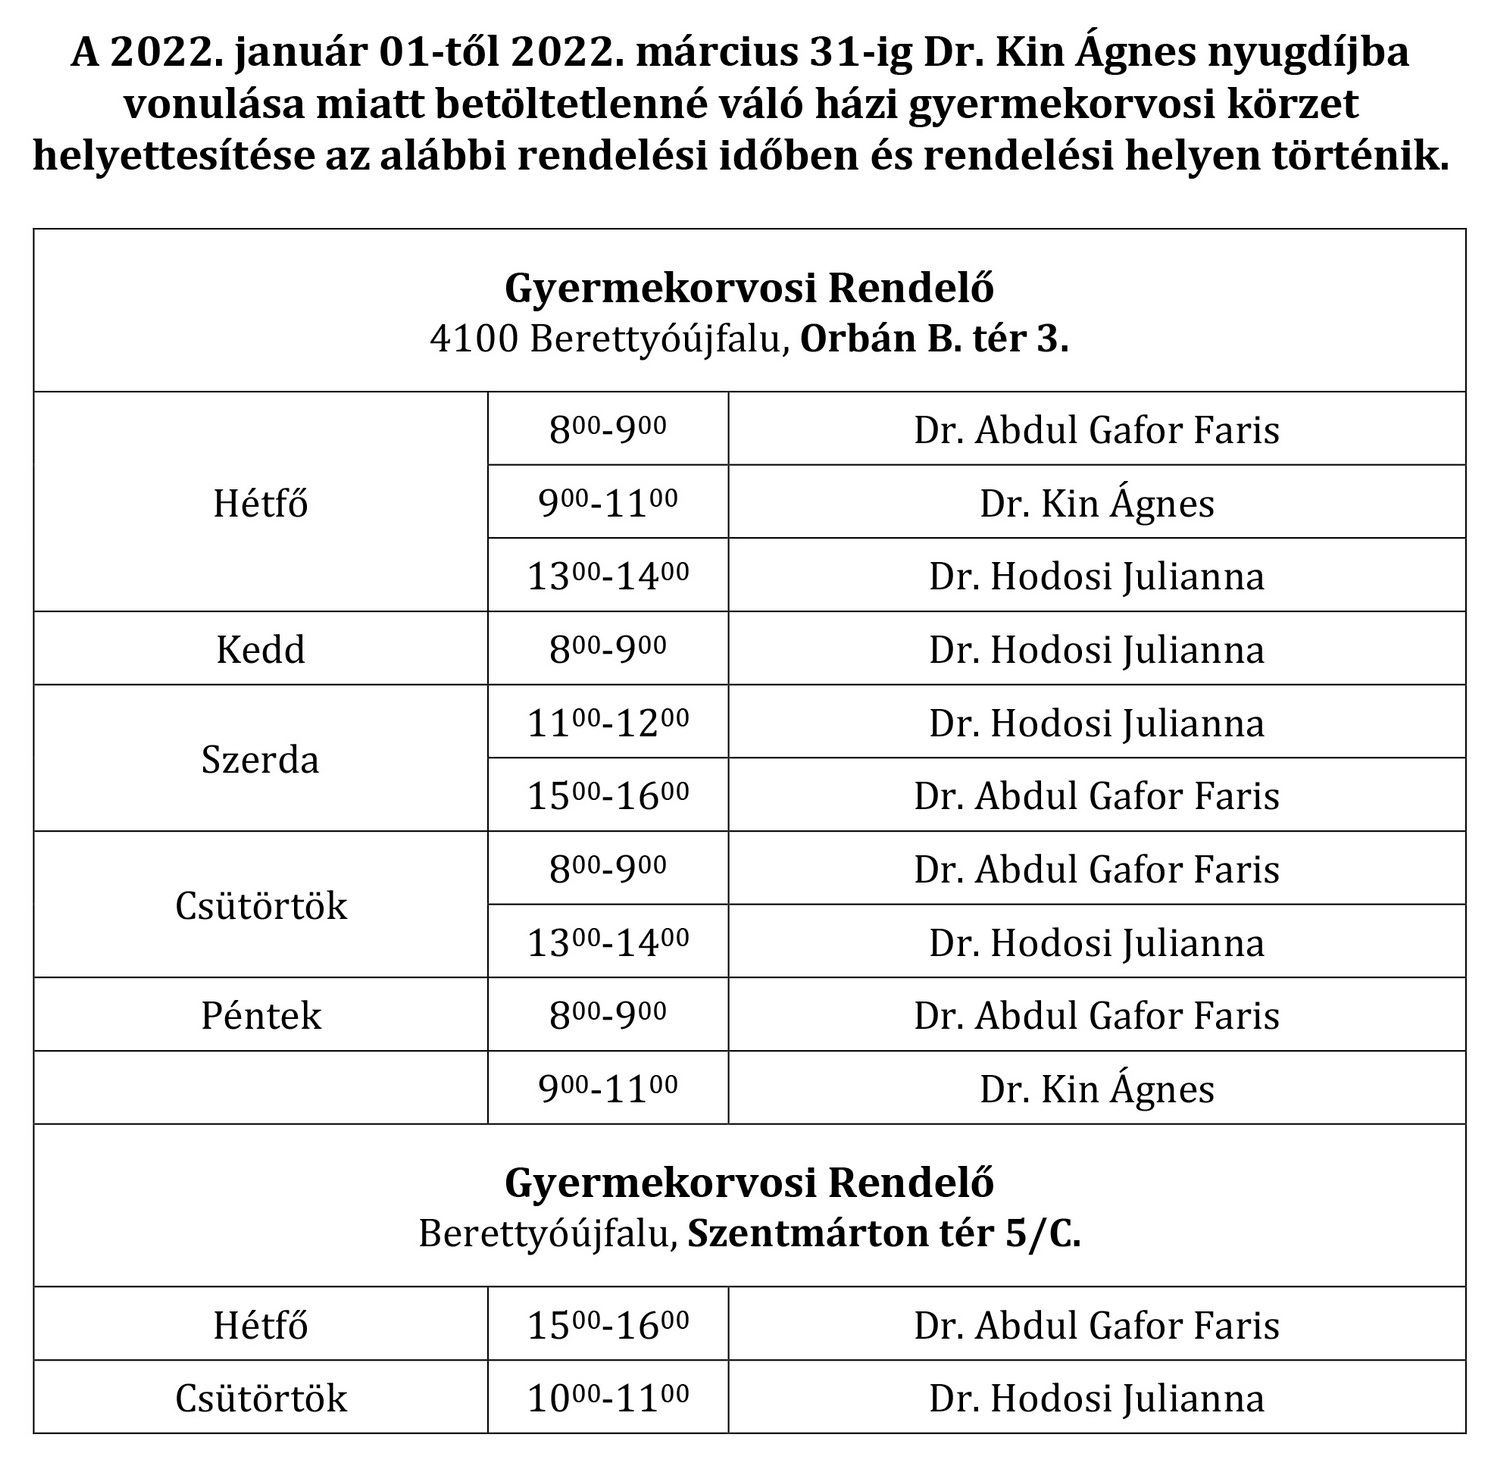 közlemény házi gyermekorvosok 2022. január 01 től 2022